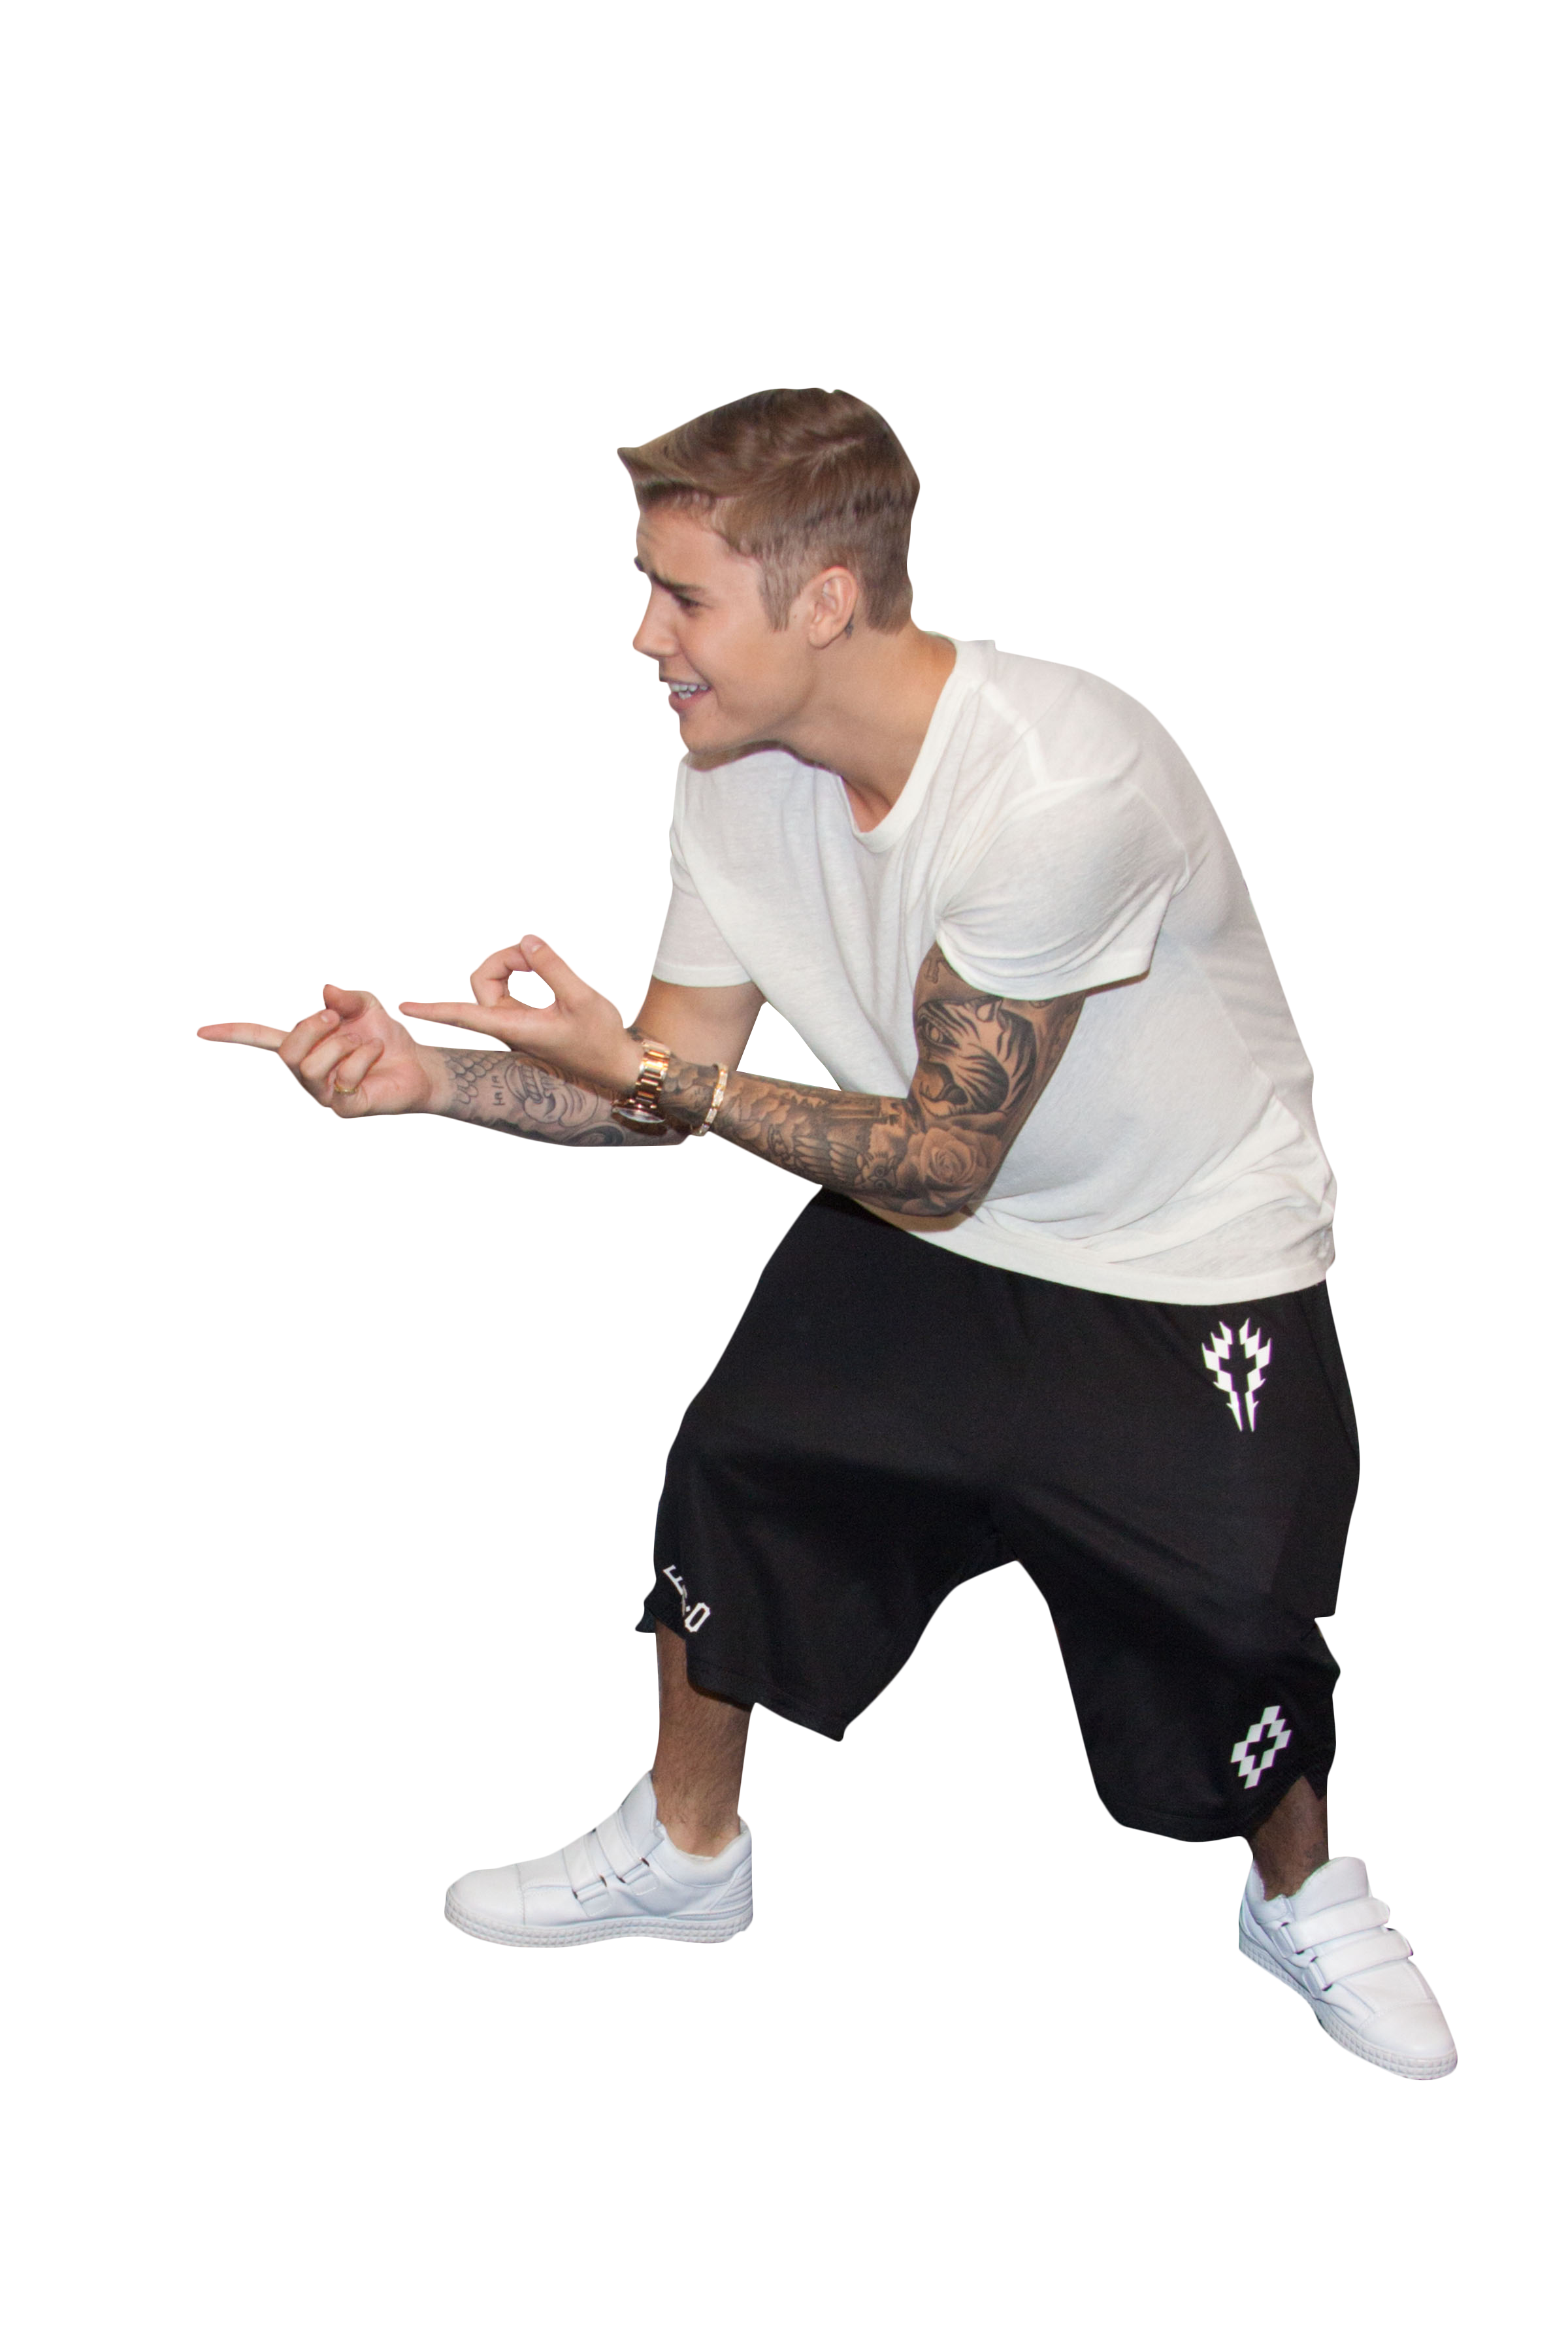 นักร้องจัสติน Bieber ฟรี PNG Image